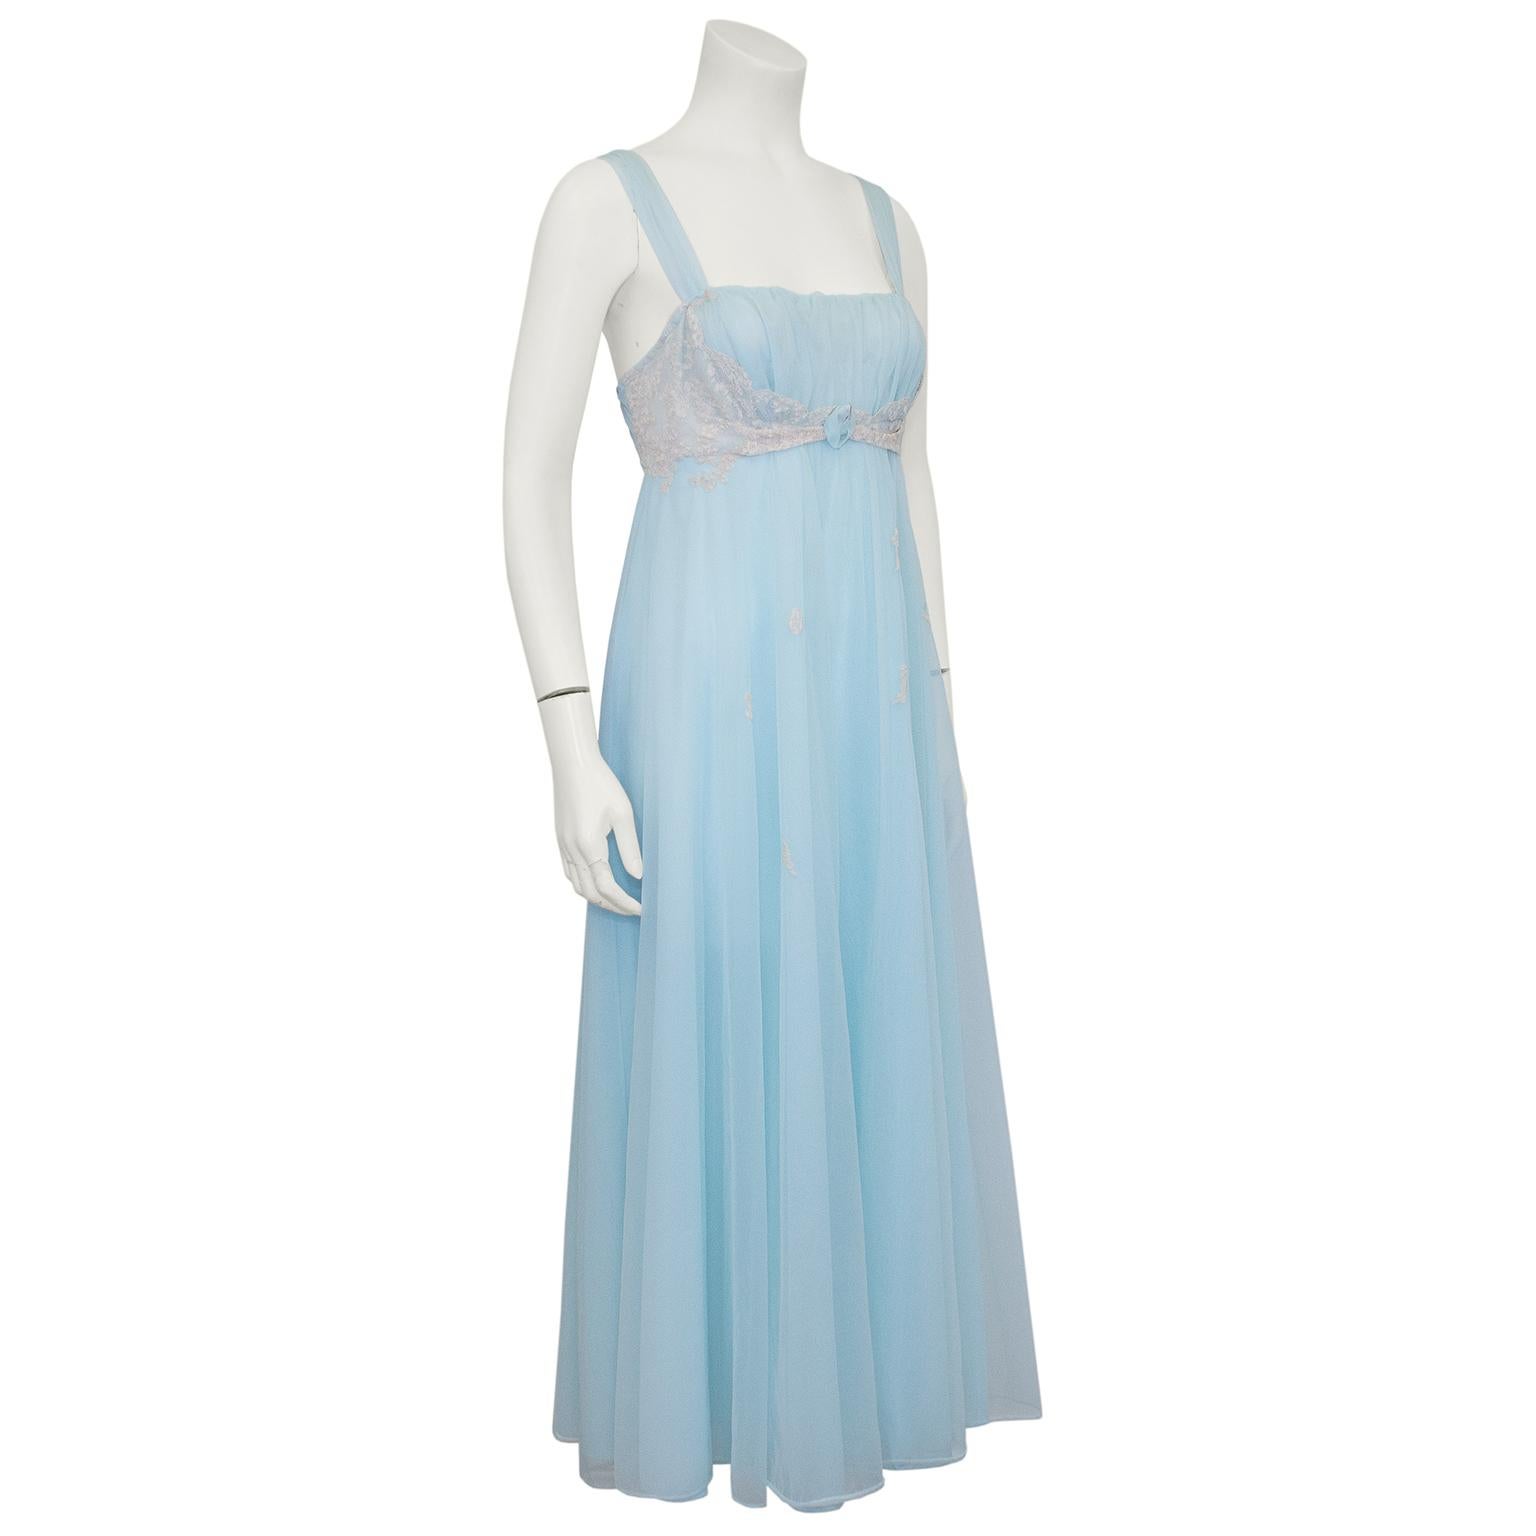 Magnifique robe d'hôtesse des années 1960 en mousseline de nylon bleu bébé, avec un buste froncé et une taille empire, des détails en dentelle crème et une rosette bleu bébé. De petits détails en dentelle tombent en cascade le long de la jupe